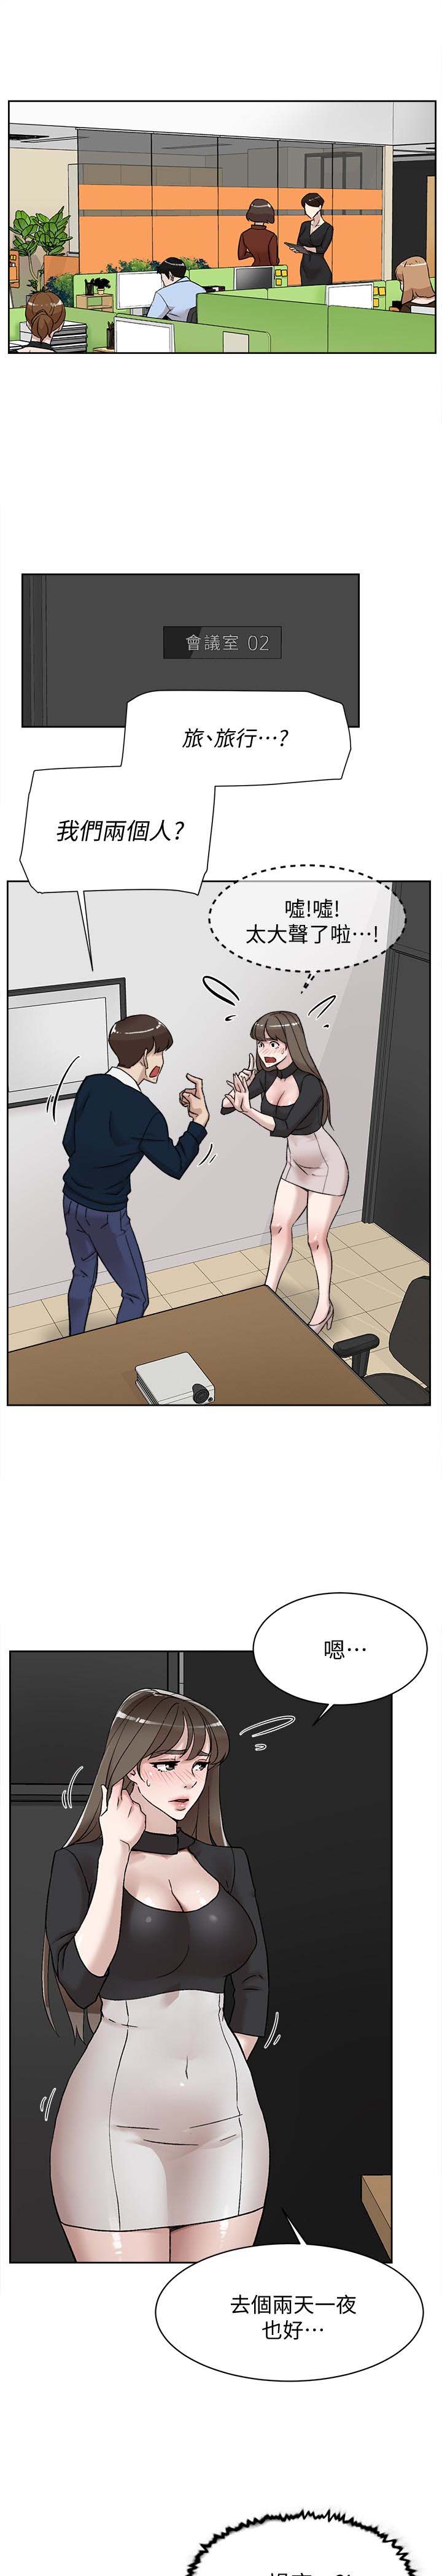 《她的高跟鞋》漫画 第102话 撞见母亲的偷情现场